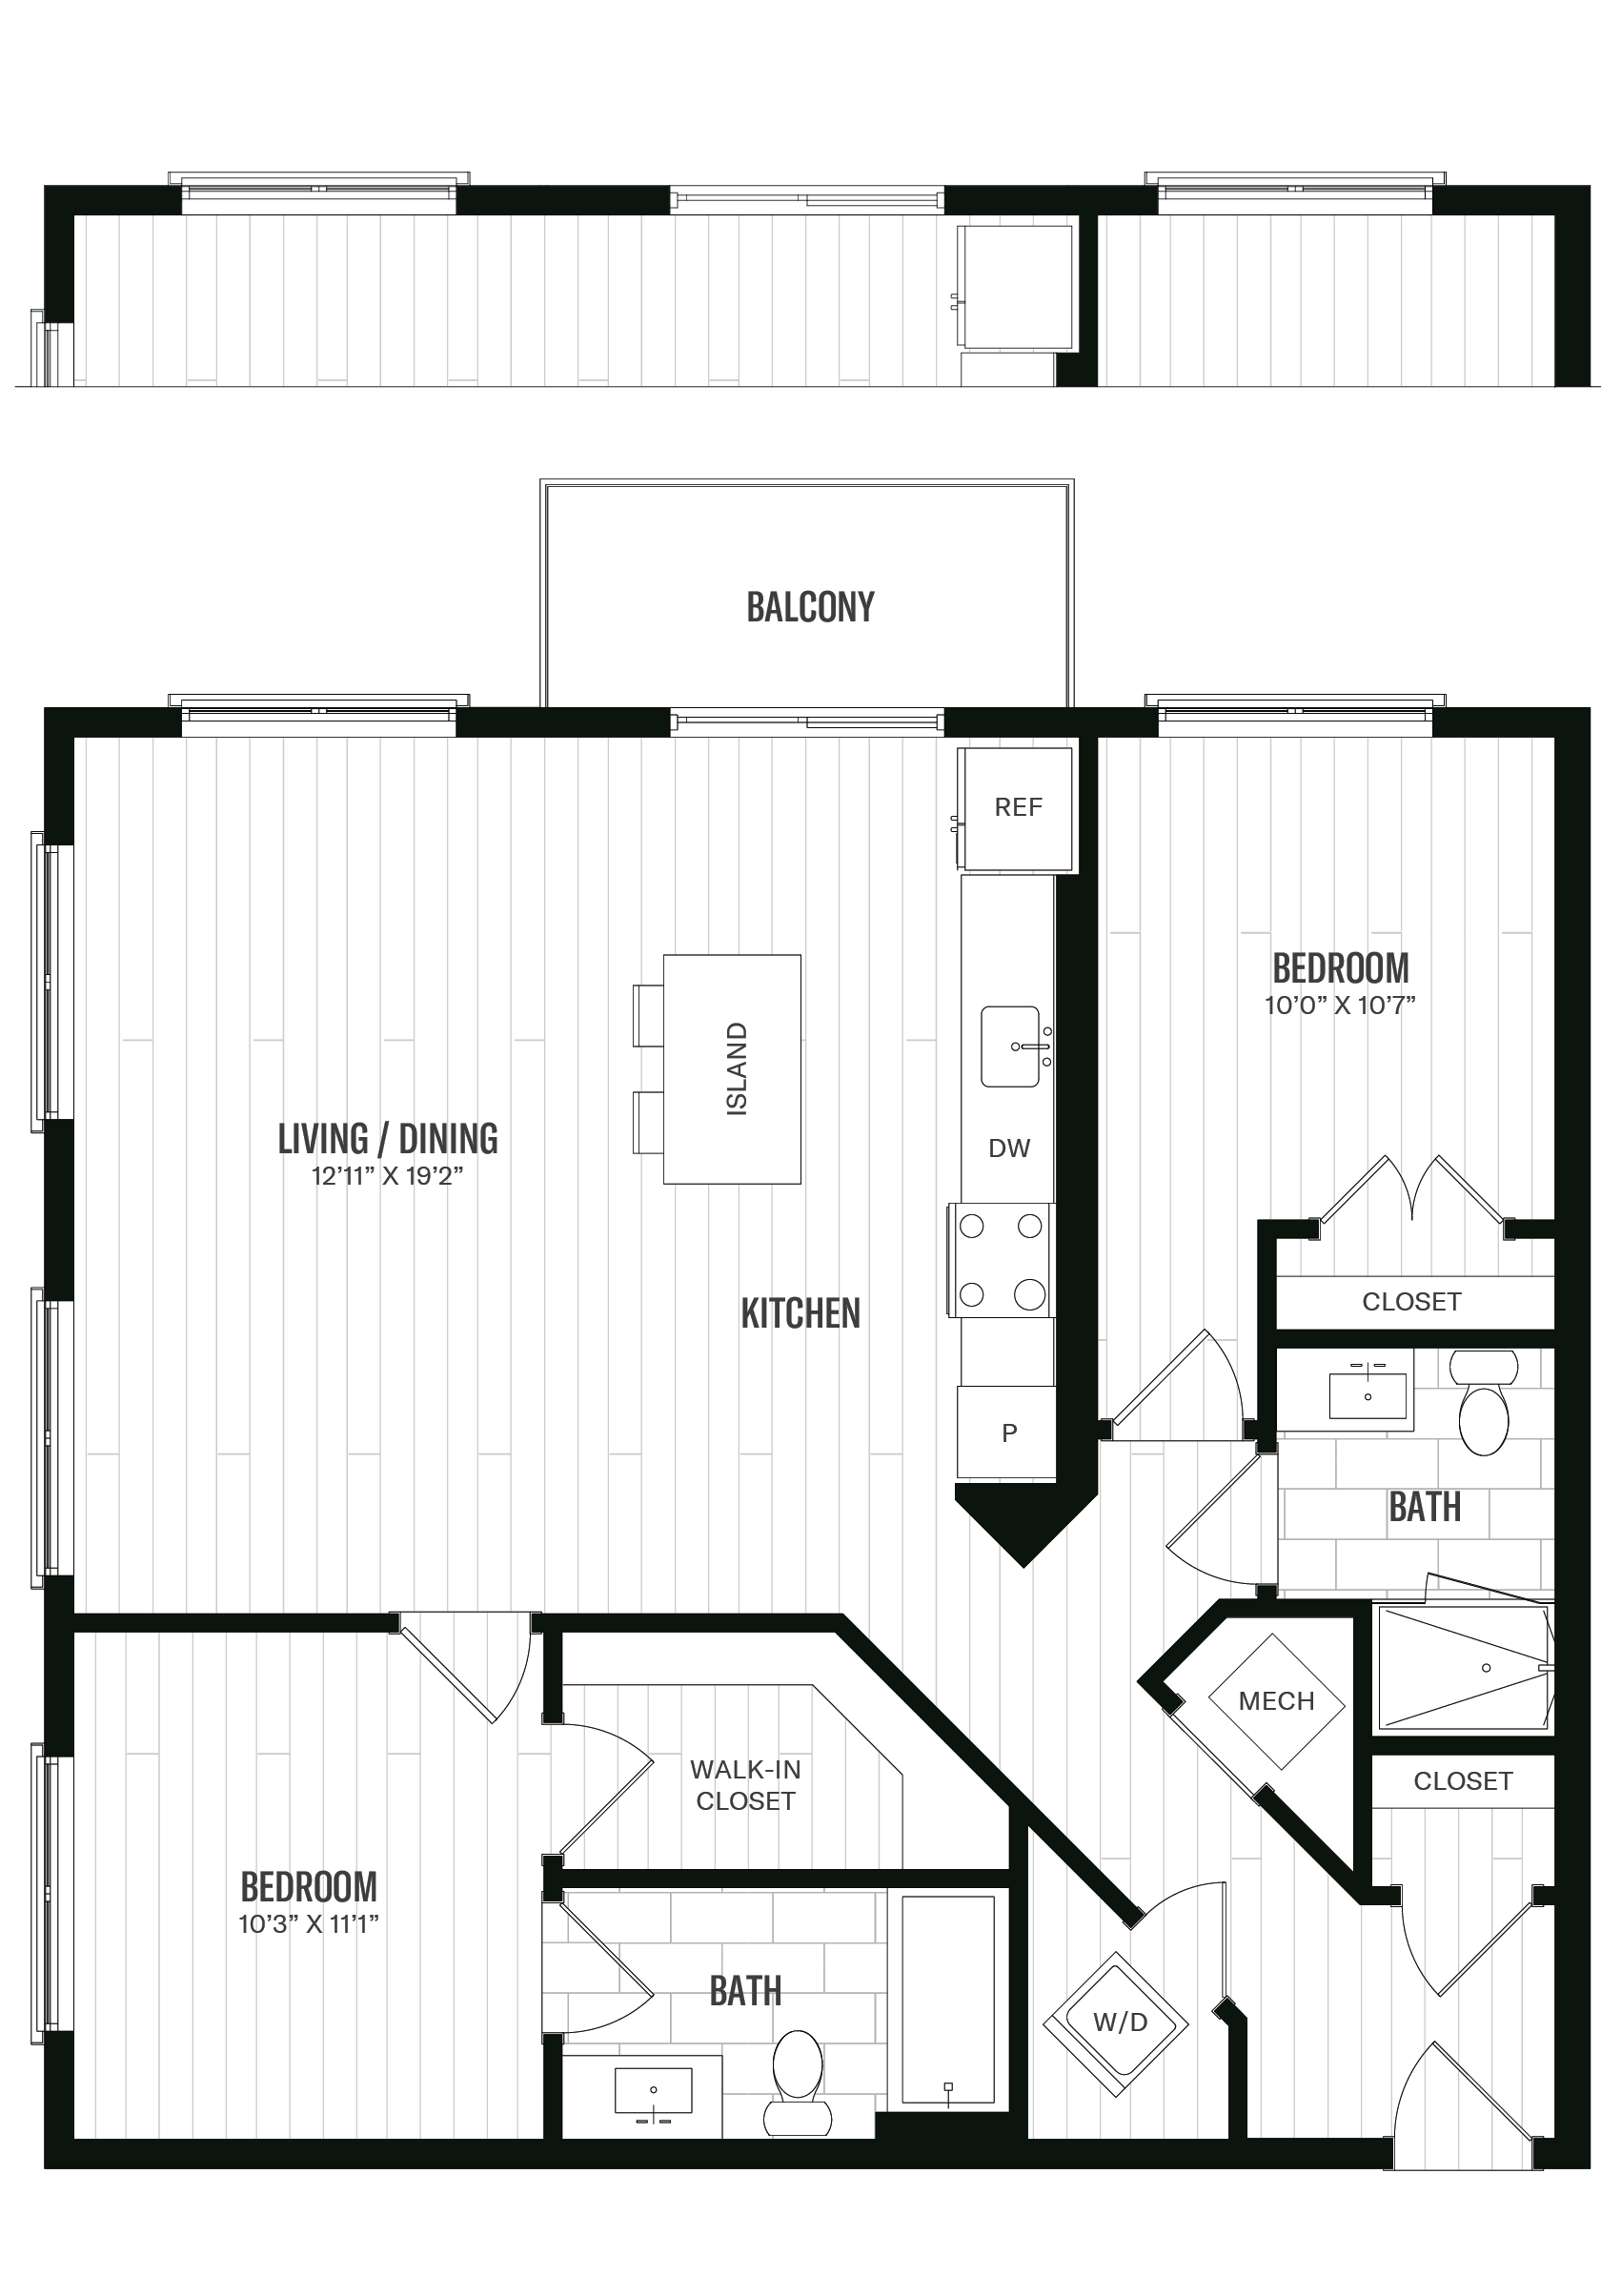 Floorplan image of unit 335